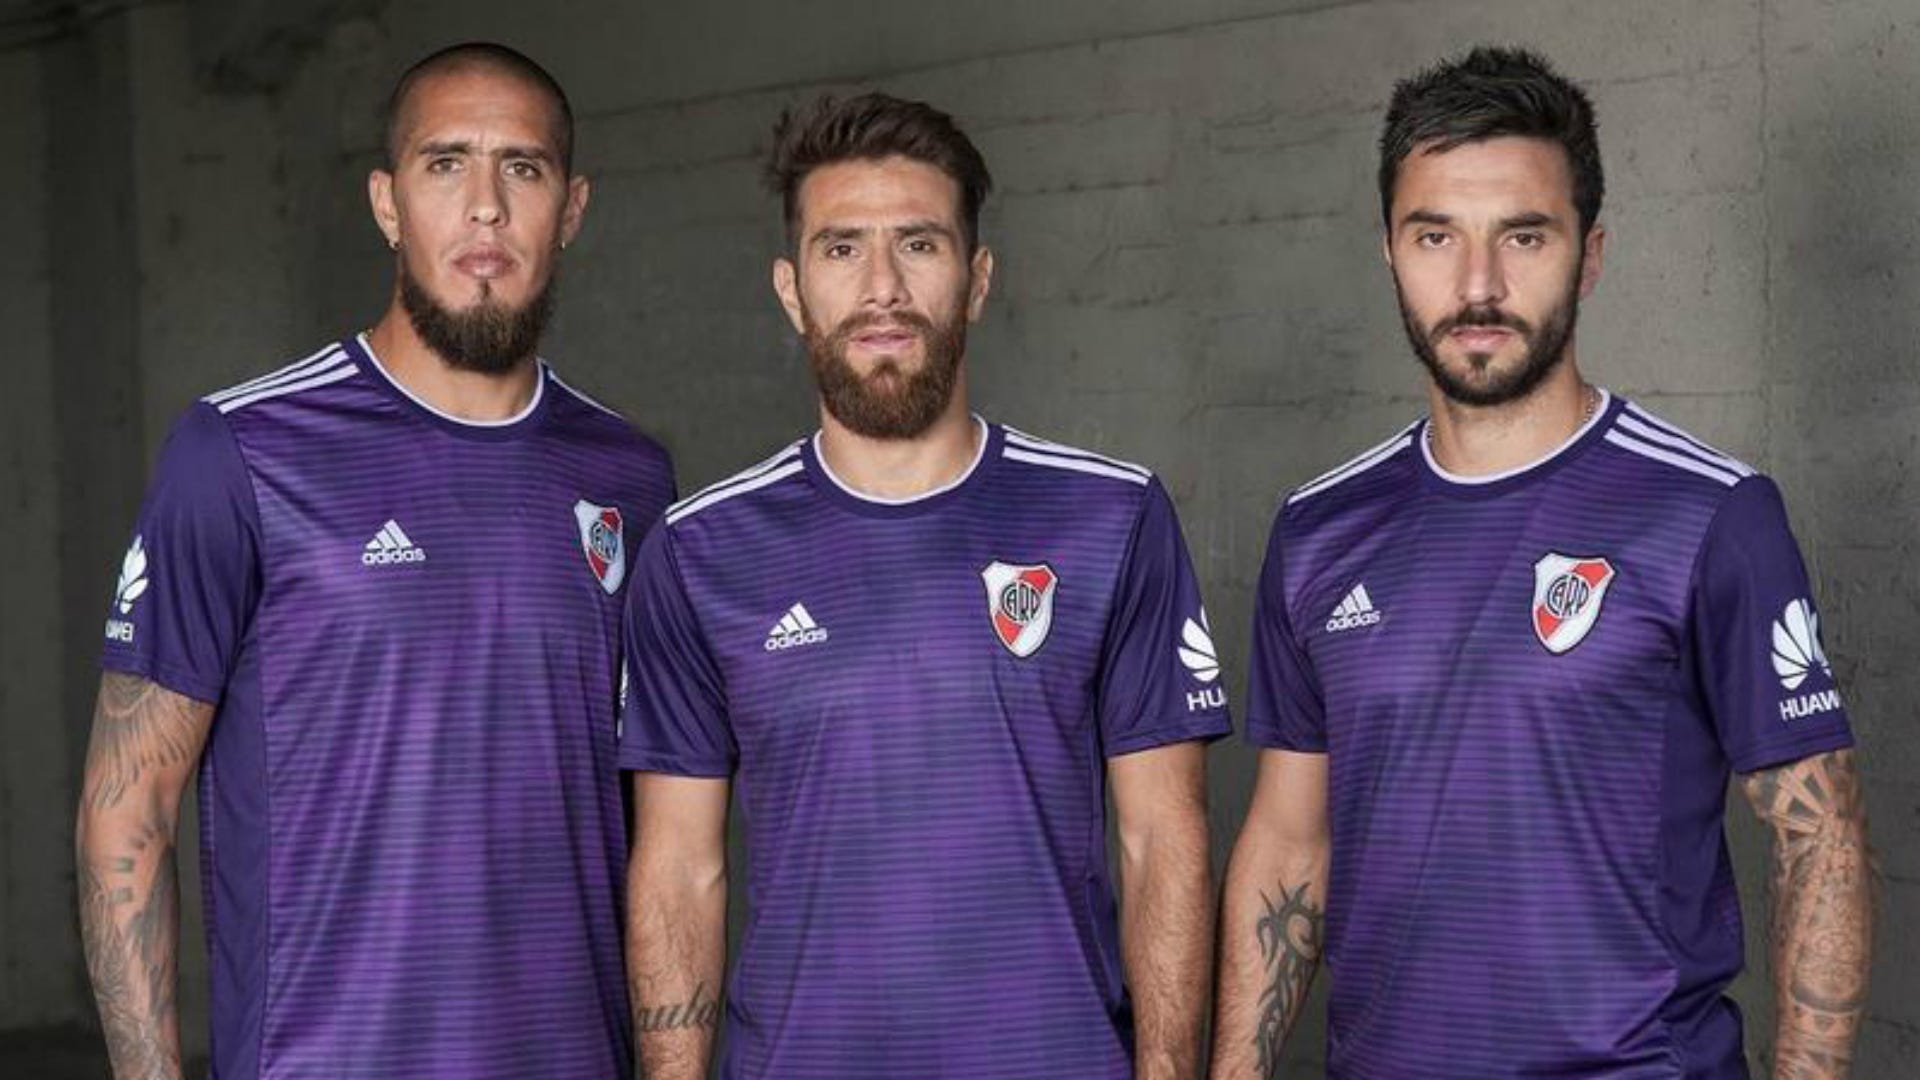 Por qué River usa camiseta violeta? Goal.com Espana